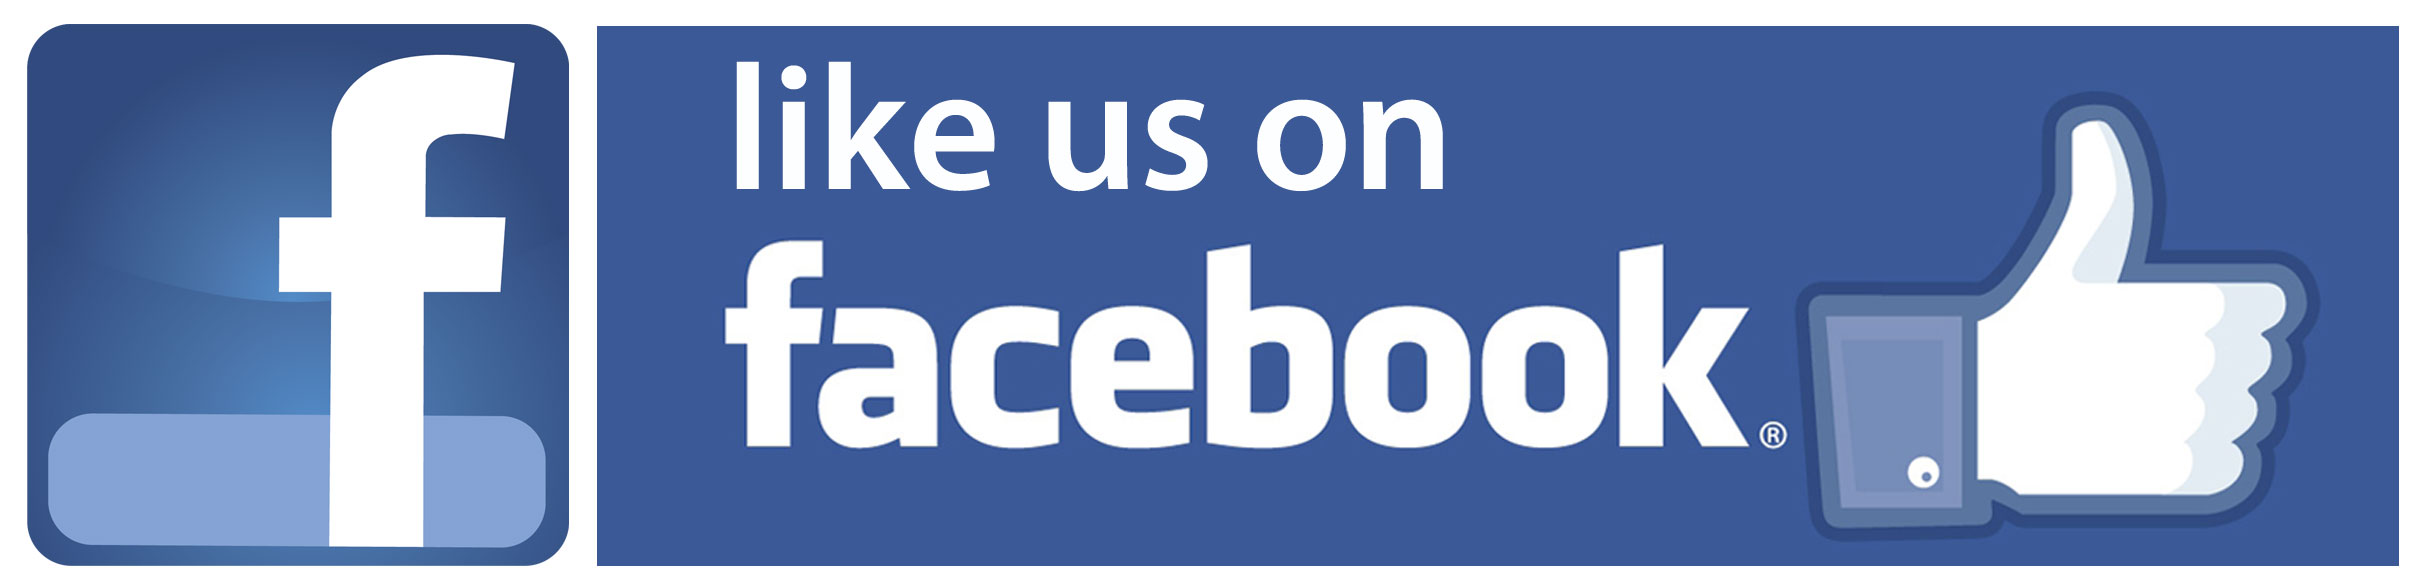 Folgen Sie uns auf Facebook